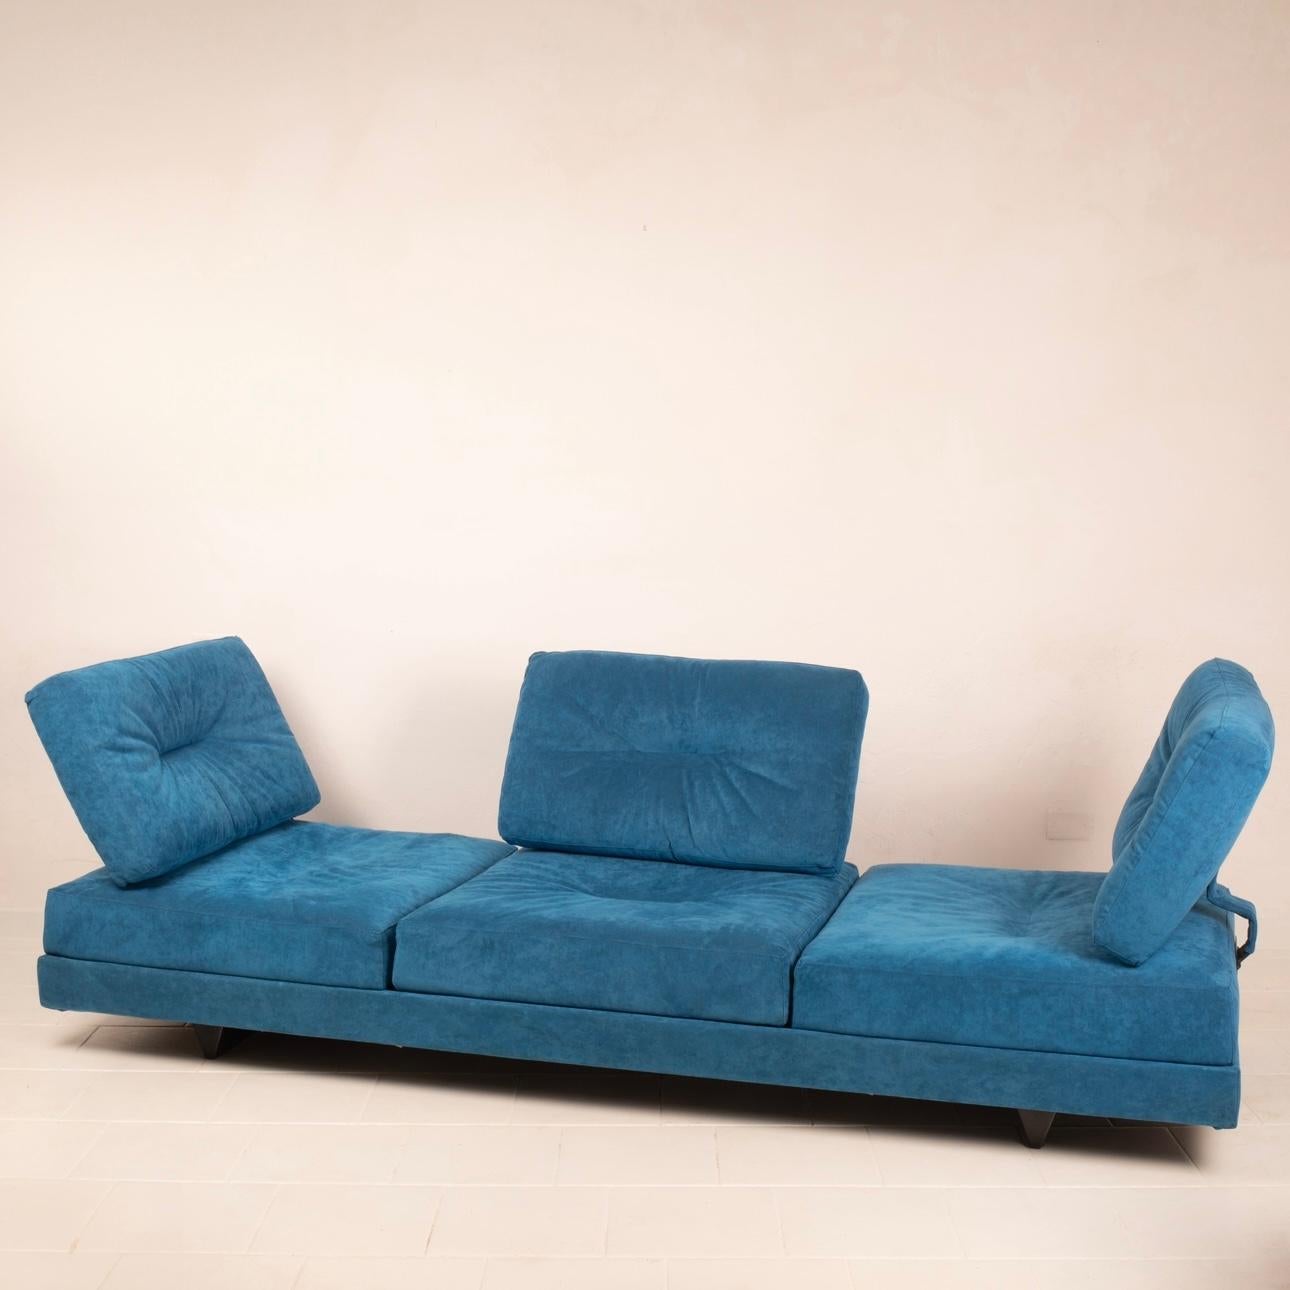 Stupendo divano tre posti modello Editor disegnato da Mauro Lipparini per Da a Italia.
Il divano è un sistema mobile e posizionabile a piacimento, in quanto i cuscini e le sedute si possono mettere in qualsiasi direzione, realizzato in alcantara